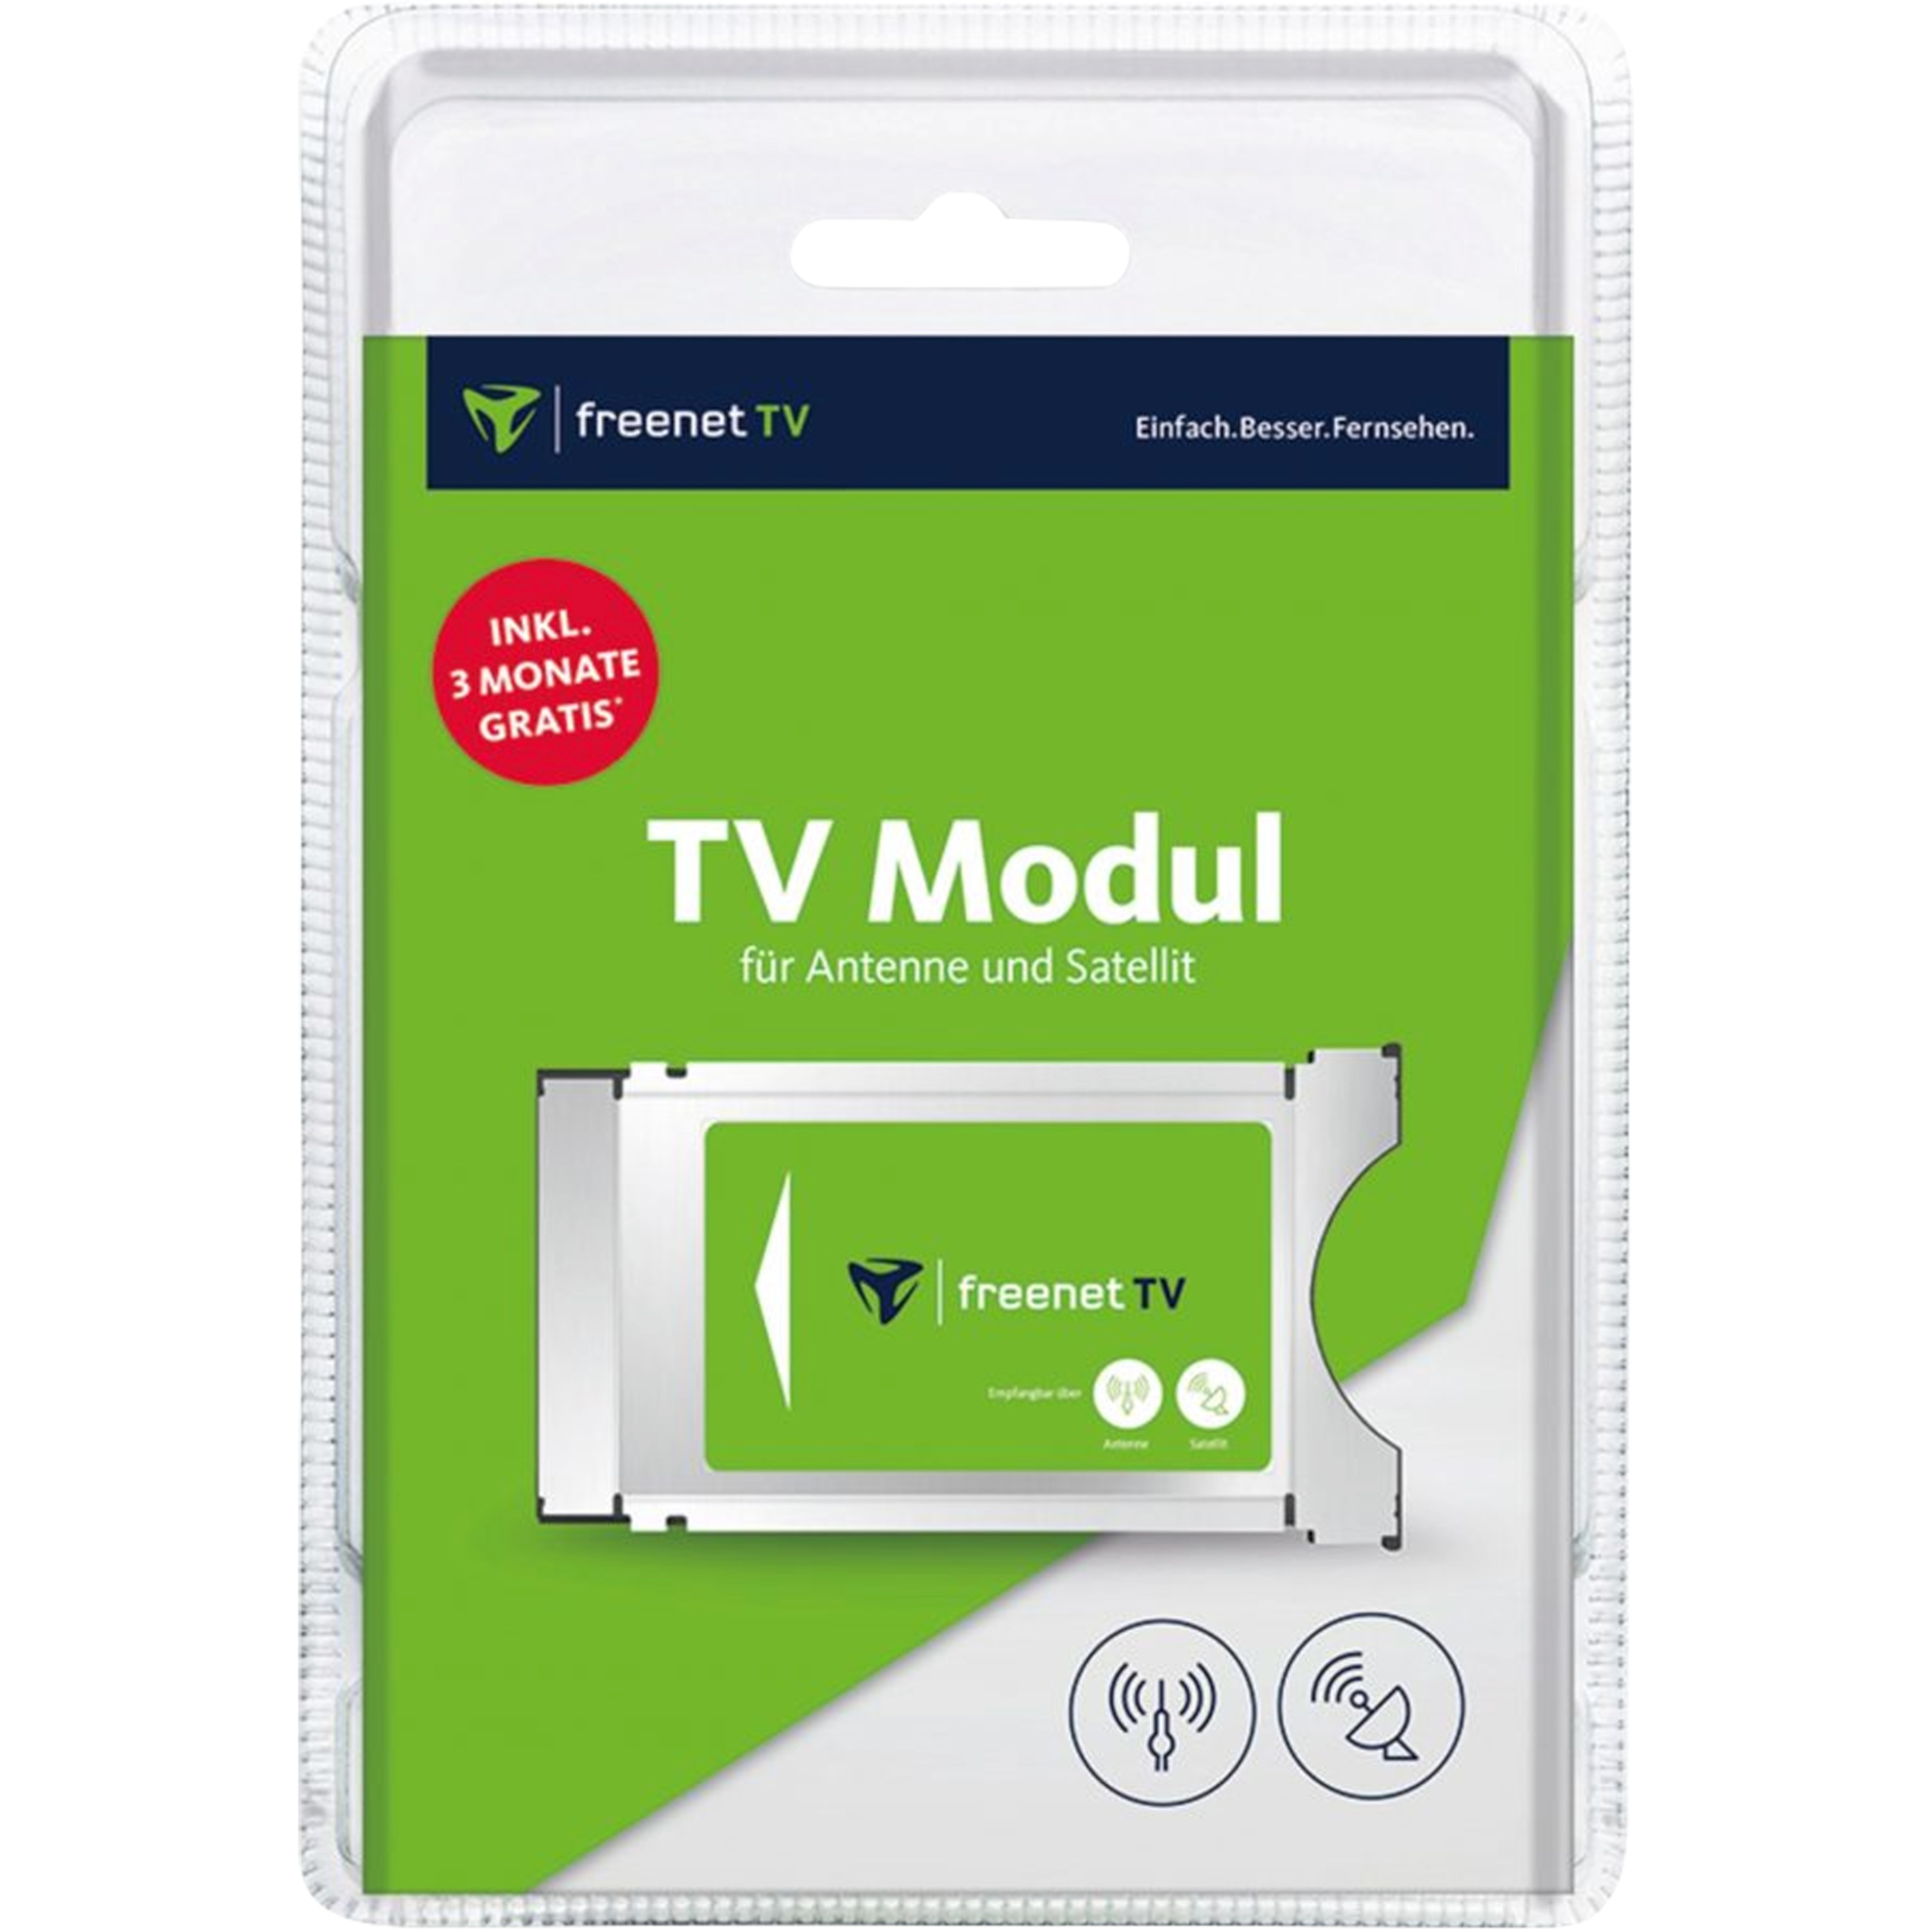 MEDION® LIFE® P16502 TV, 163,8 cm (65'') Ultra HD Fernseher, inkl. DVB-T 2 HD Modul (3 Monate freenet TV gratis) - ARTIKELSET